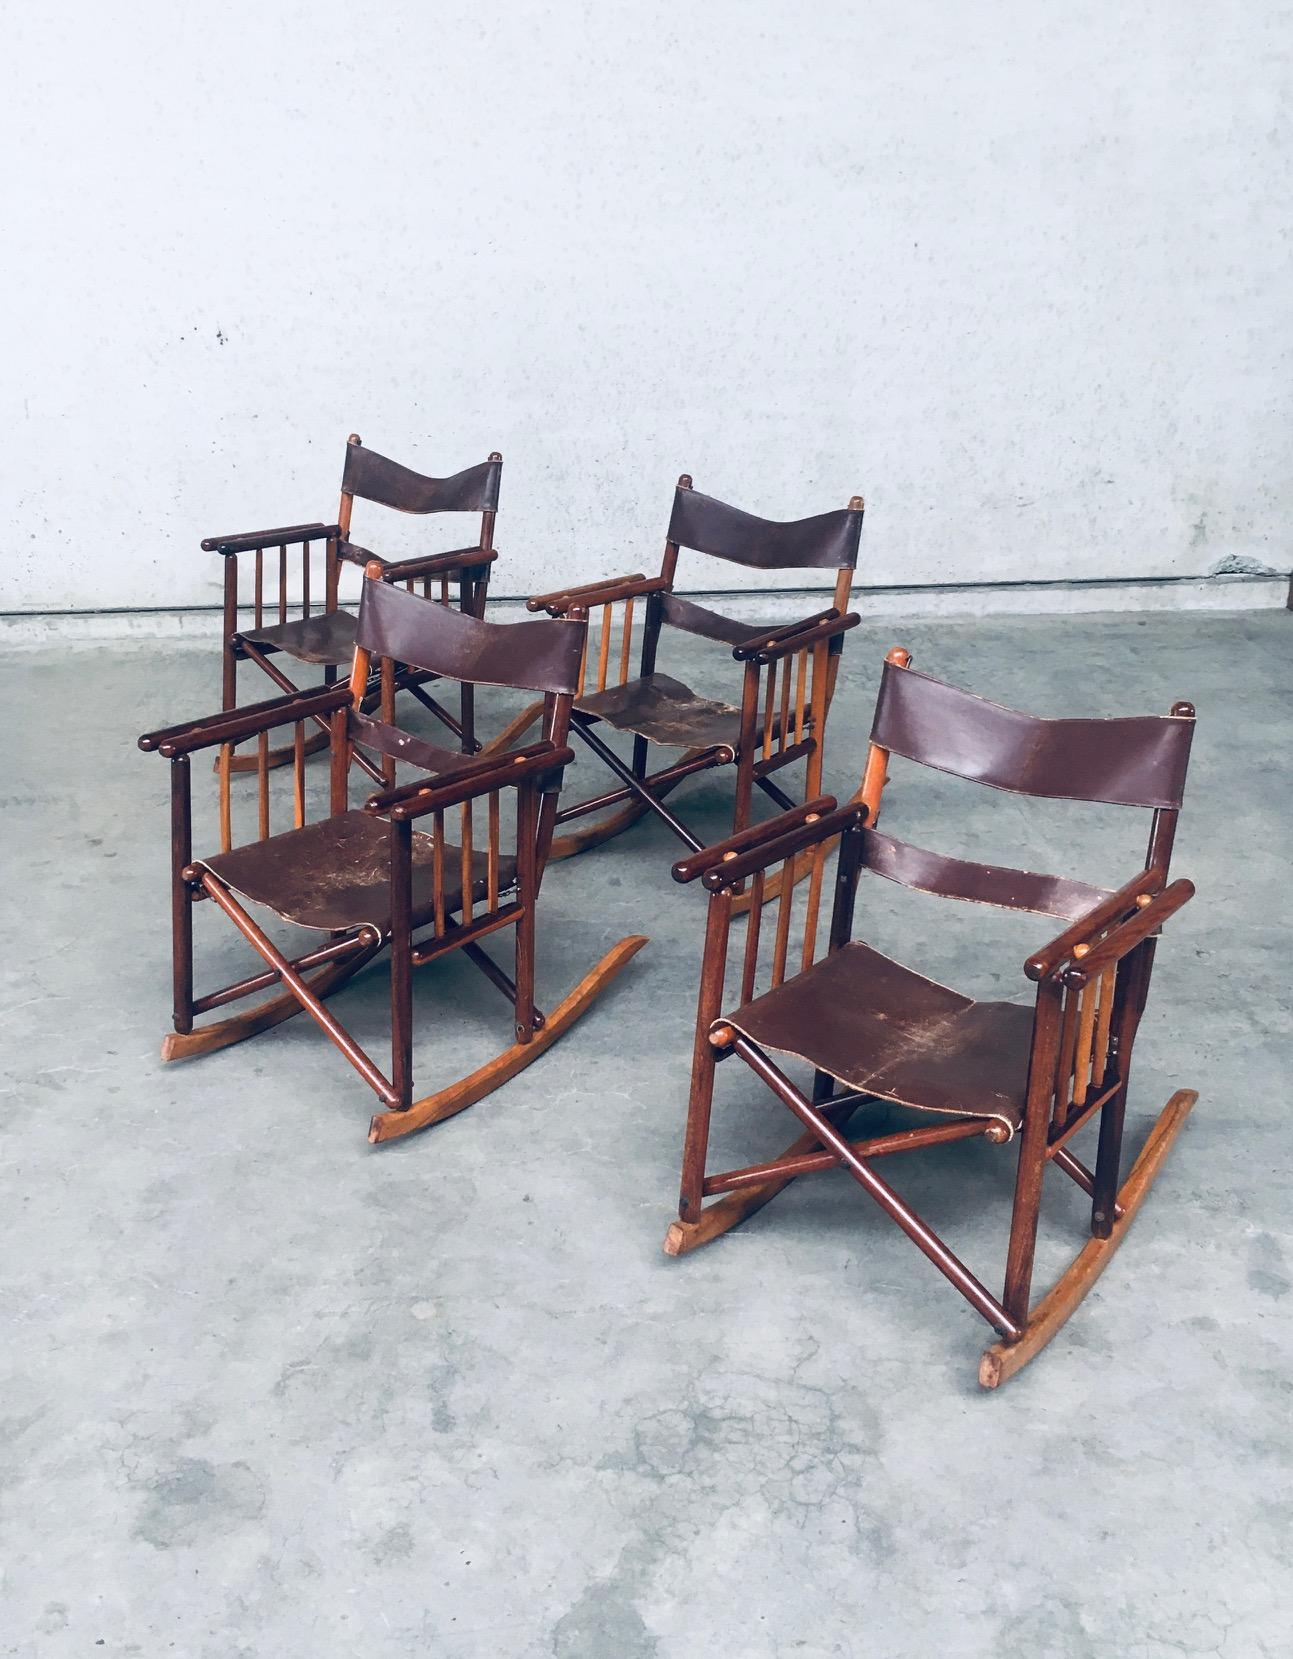 Vintage Original Midcentury Costa Rican Folding Safari Campaigner Schaukelstuhl Satz von 4. Made in Costa Rica, 1950's / 60's. Exotische Hartholz konstruiert Rahmen mit braunen Lederriemen für Rückenlehne und braunem Leder Sitz. die Stühle wurden